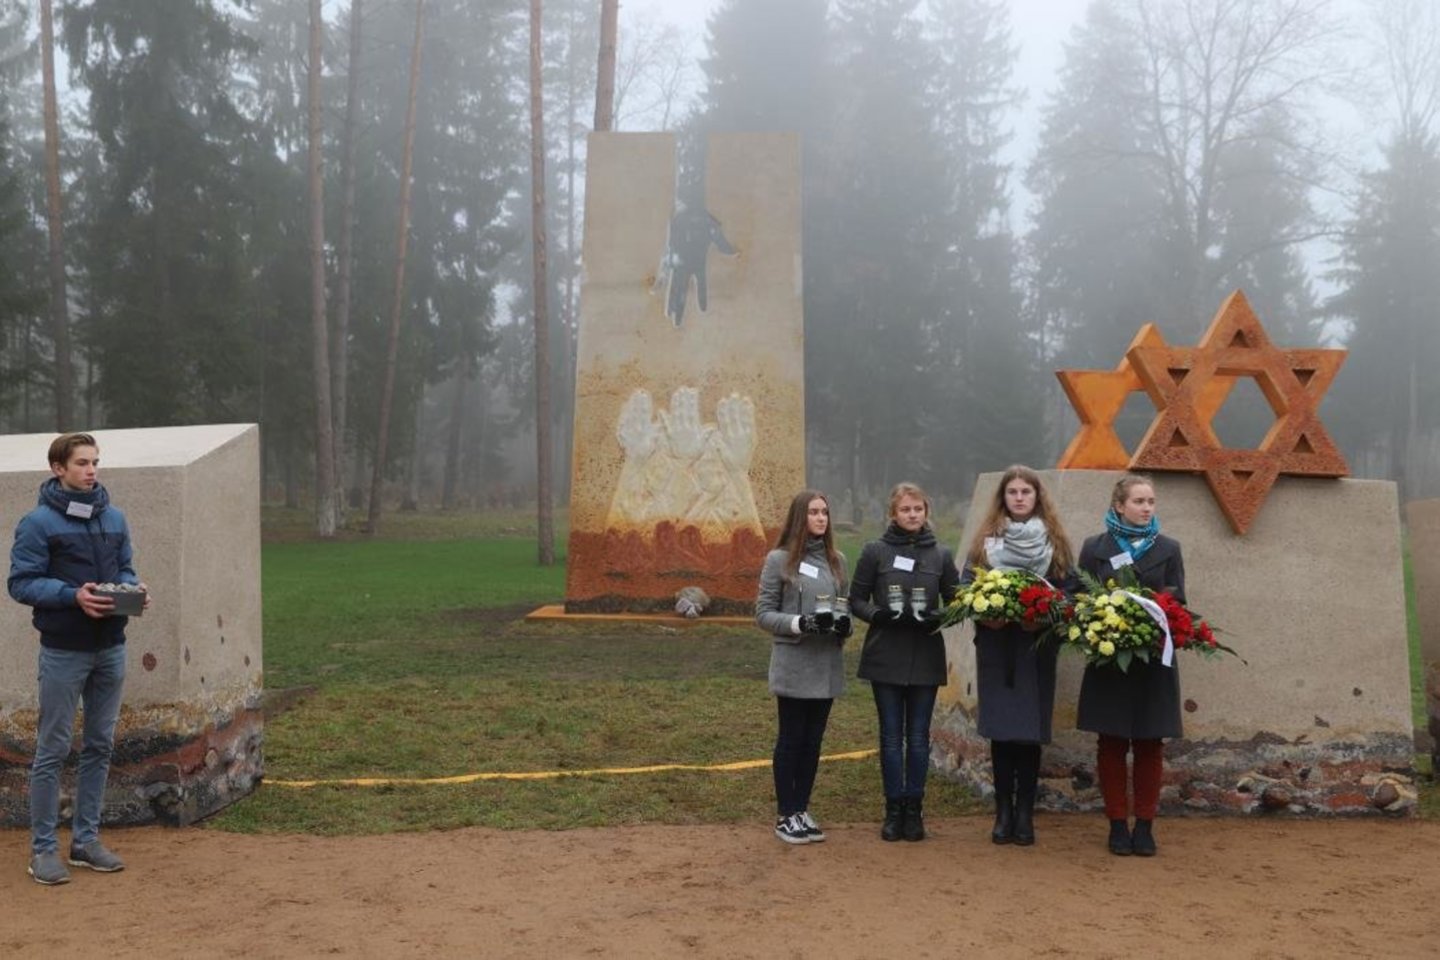  Vandžiogaloje (Kauno r.) įamžintas Holokausto aukų atminimas. <br> Kauno rajono savivaldybės nuotr.